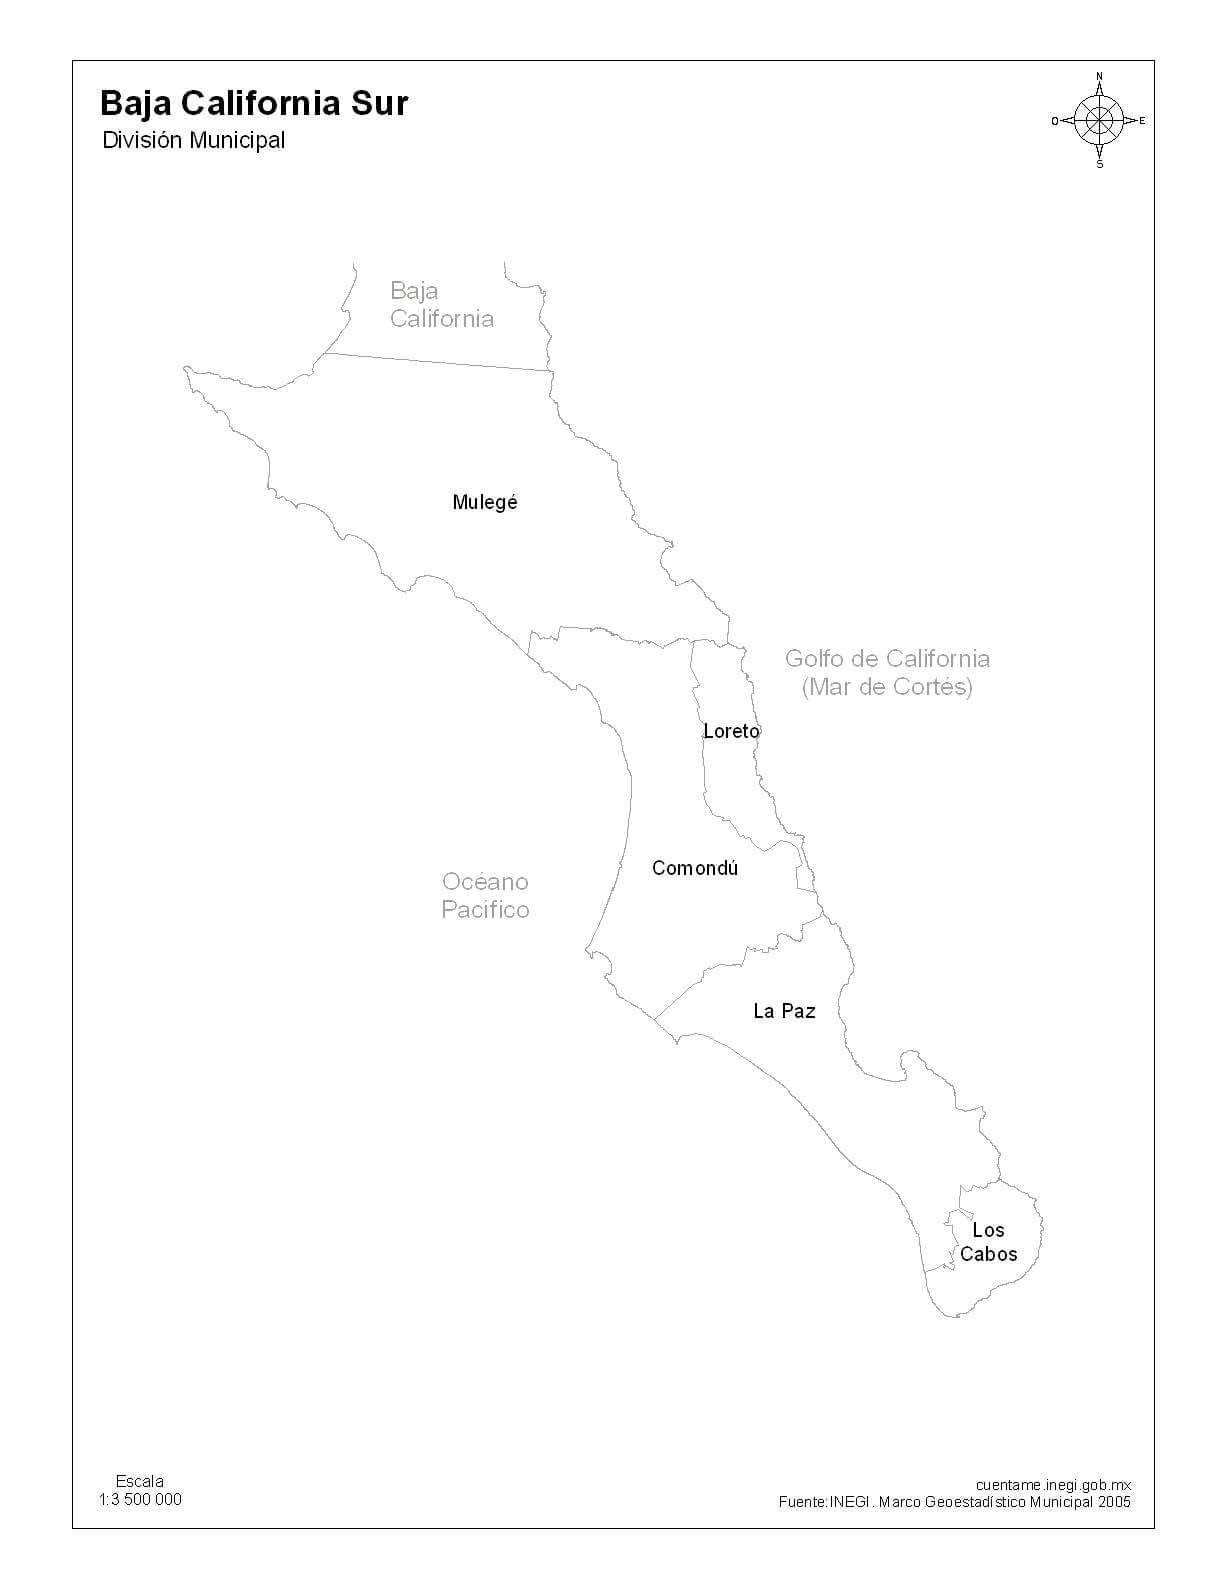 Mapa de Baja California con nombres y división política